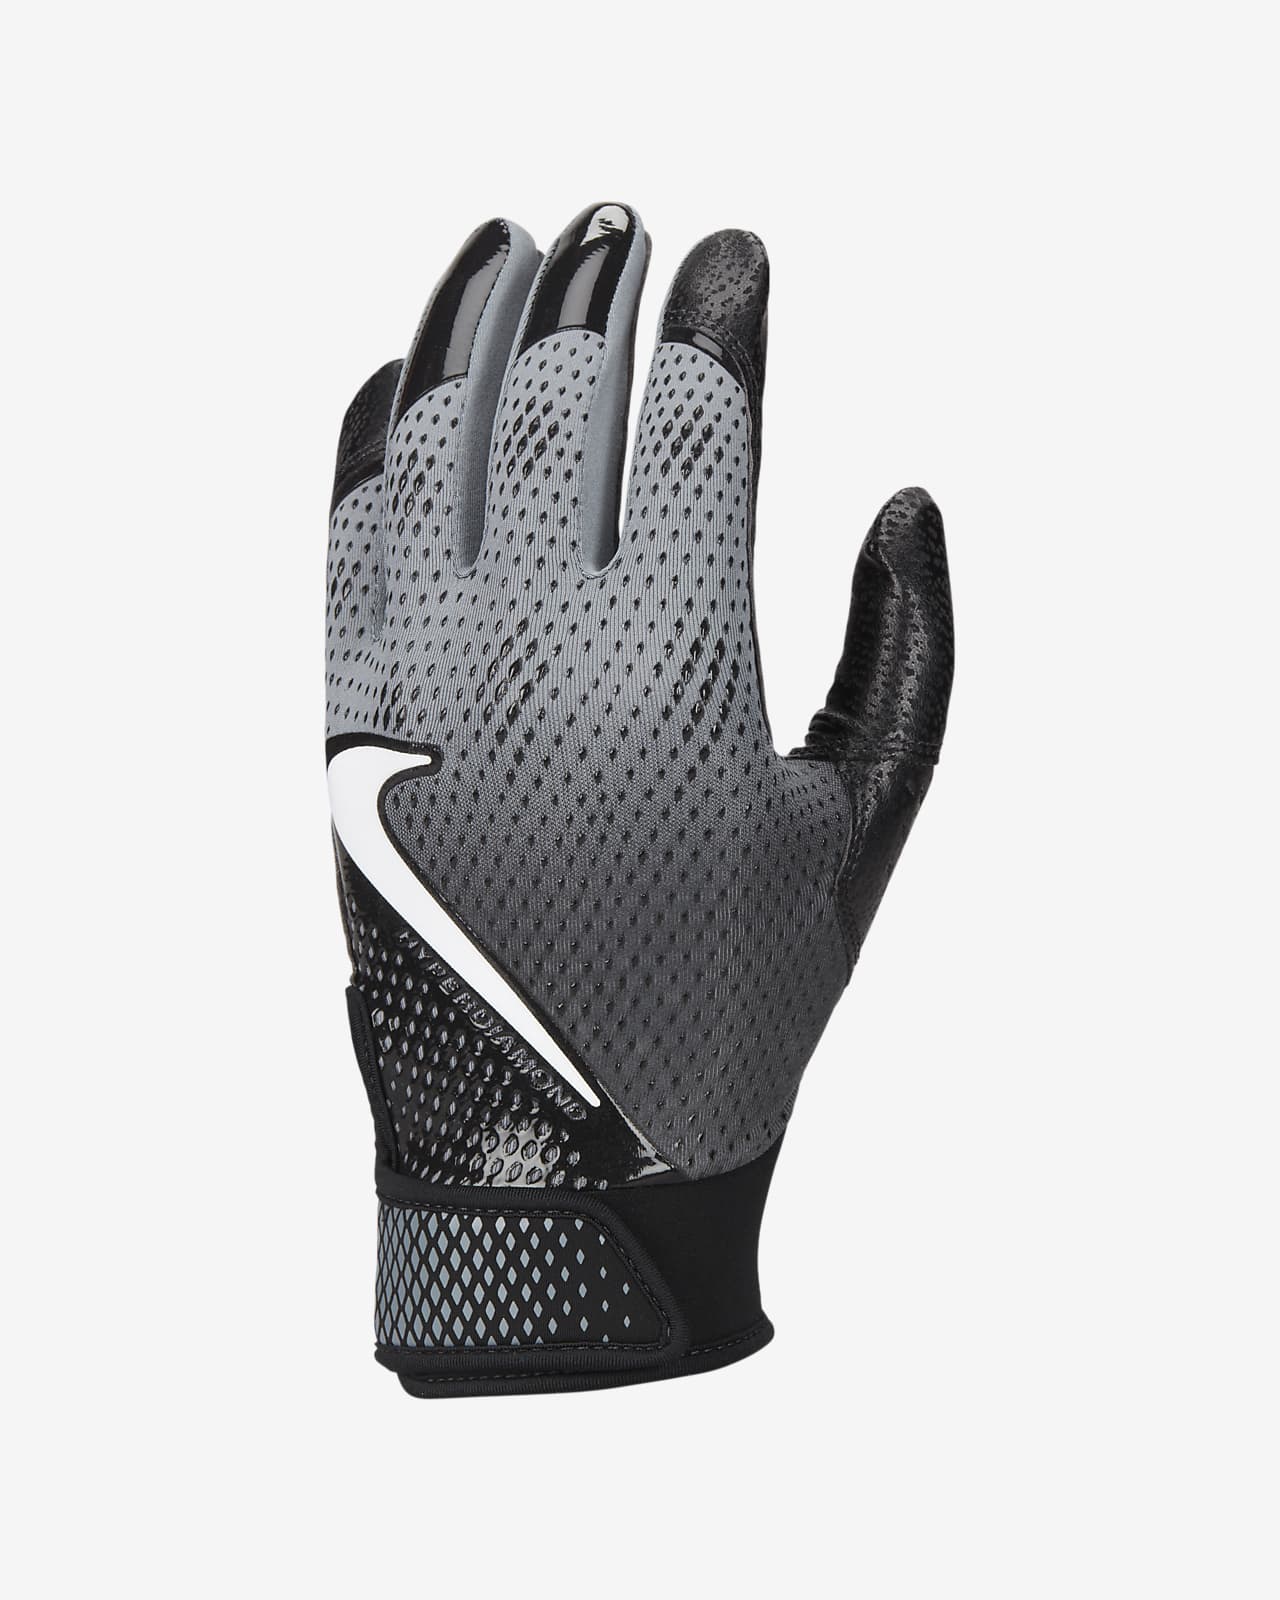 Nike Hyperdiamond Women's Softball Gloves